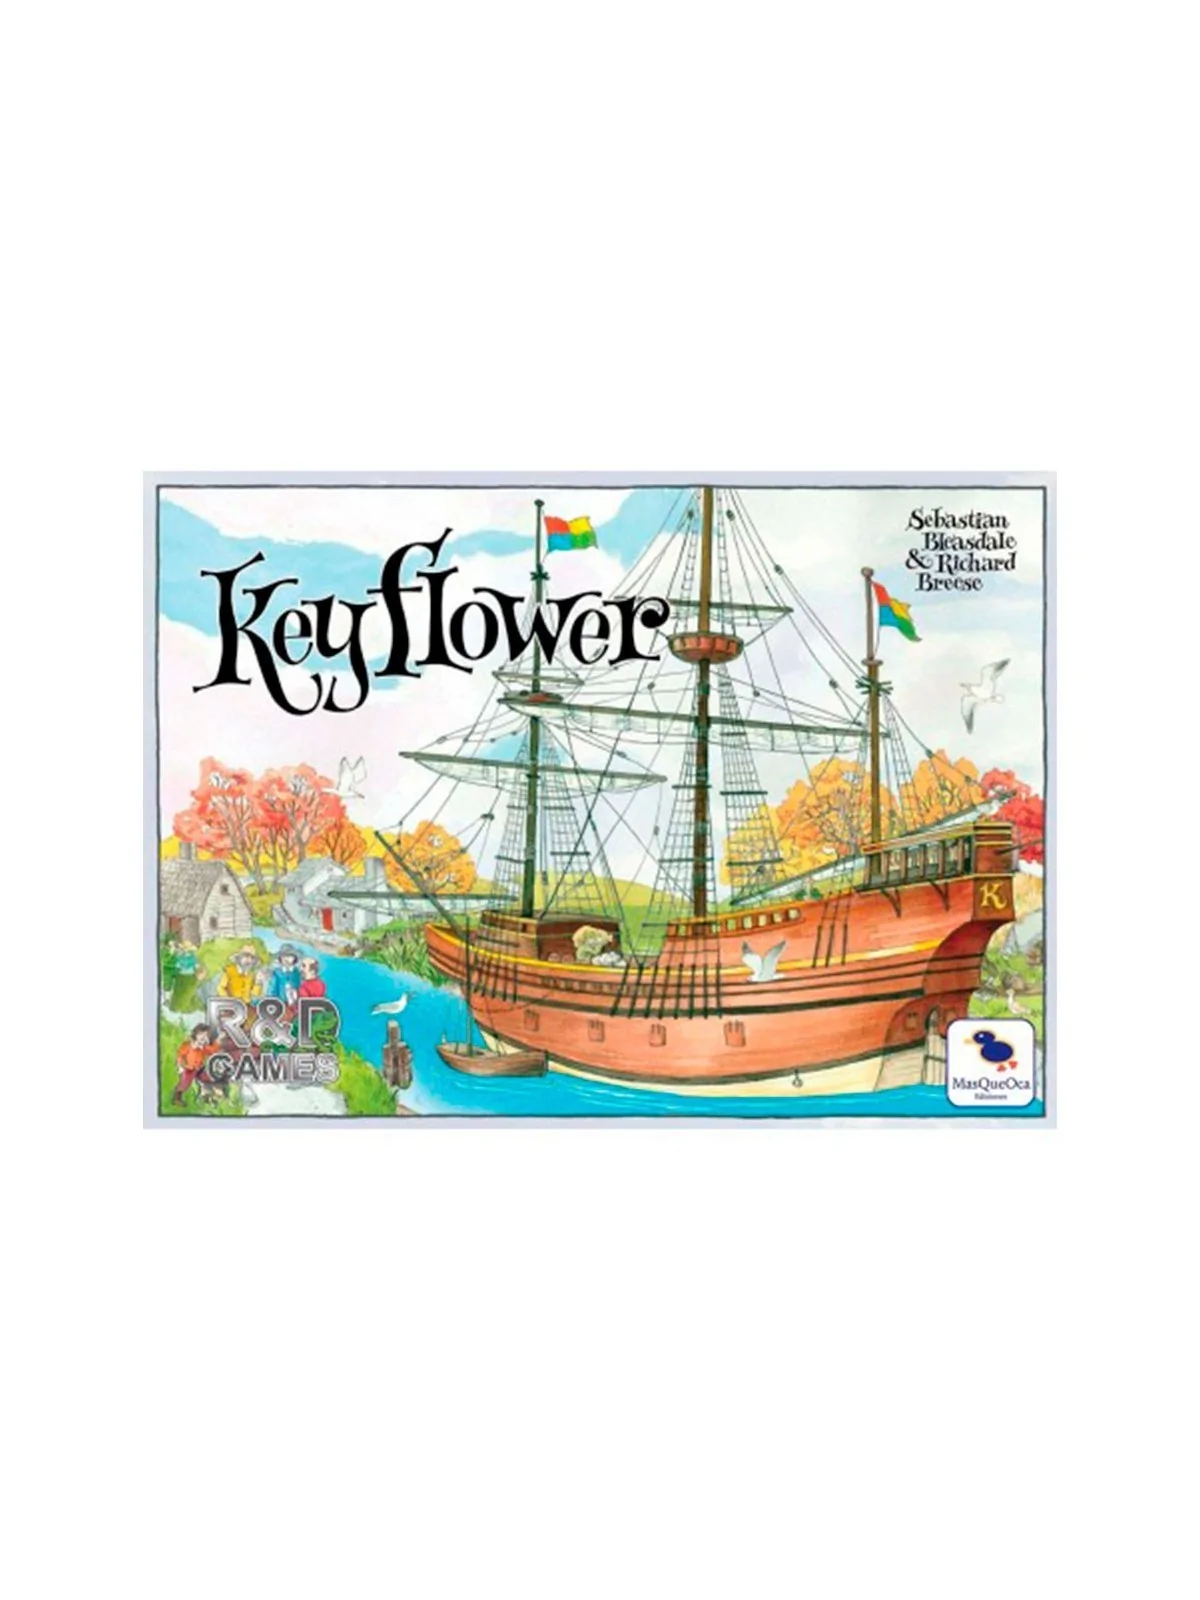 Comprar Keyflower Tercera Edición barato al mejor precio 44,99 € de Ma